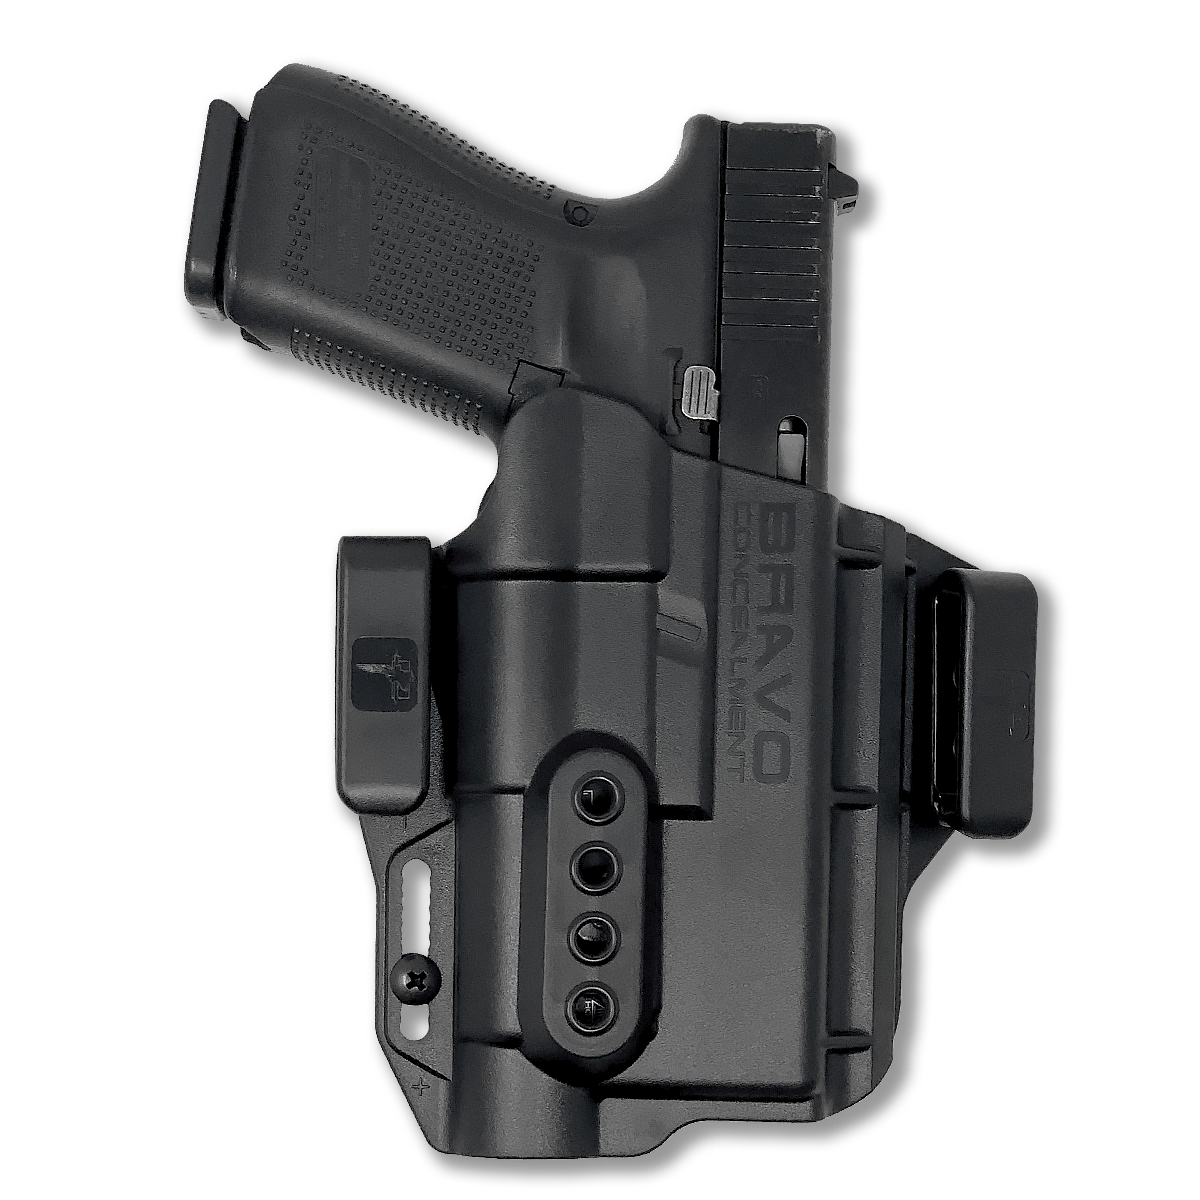 RMR Cut Concealment IWB Holster Fits Glock 41 Fits Threaded Barrel 